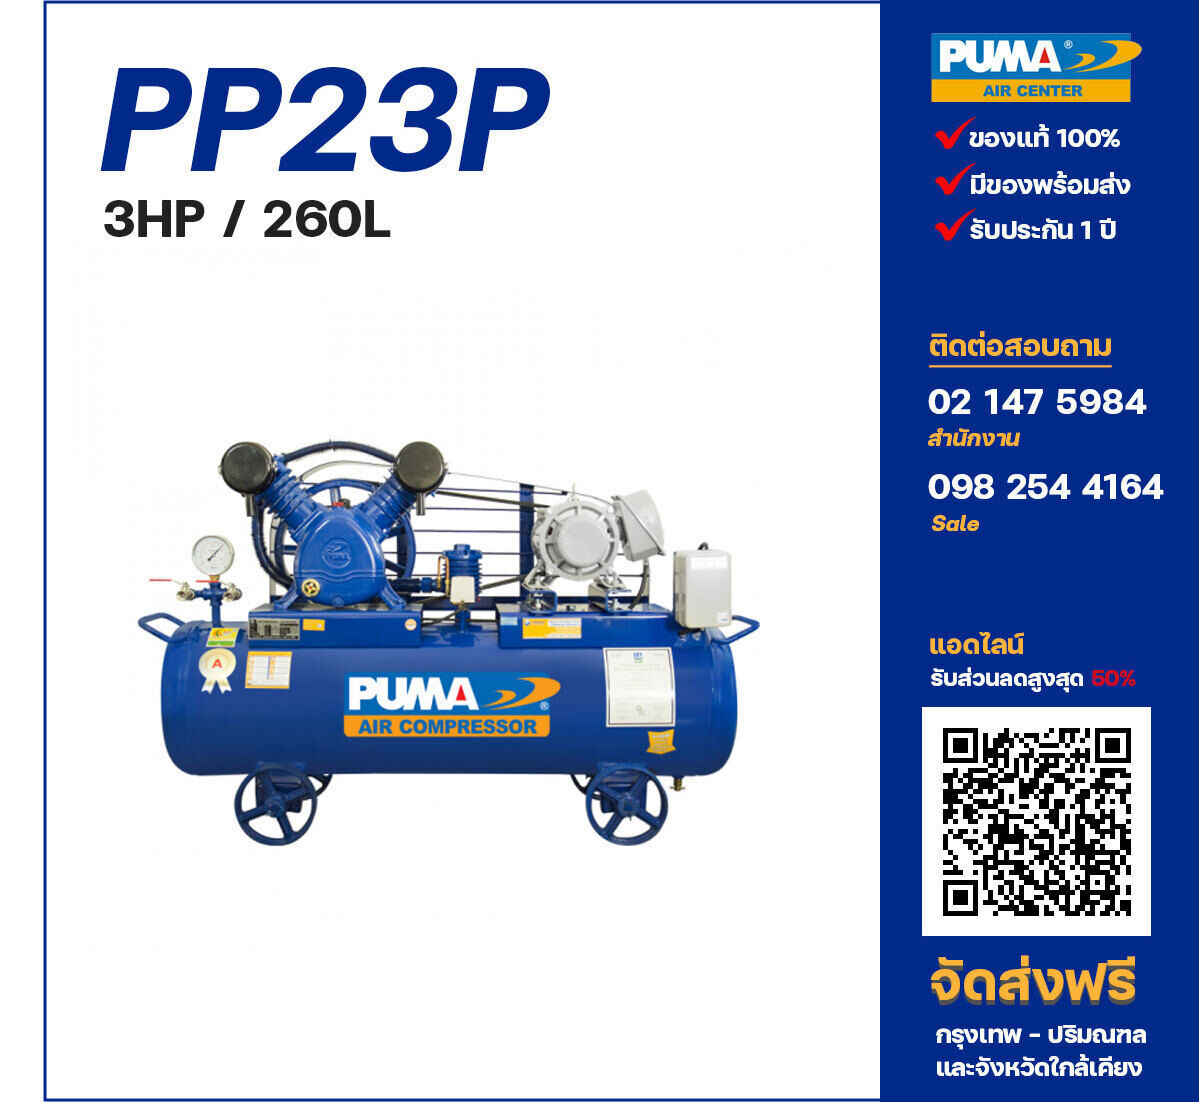 ปั๊มลมพูม่า PUMA PP23P-PPM220V/380V ปั๊มลมลูกสูบ ขนาด 2 สูบ 3 แรงม้า 260 ลิตร PUMA พร้อมมอเตอร์ PUMA ไฟ 220V/380V ส่งฟรี กรุงเทพฯ-ปริมณฑล รับประกัน 1 ปี